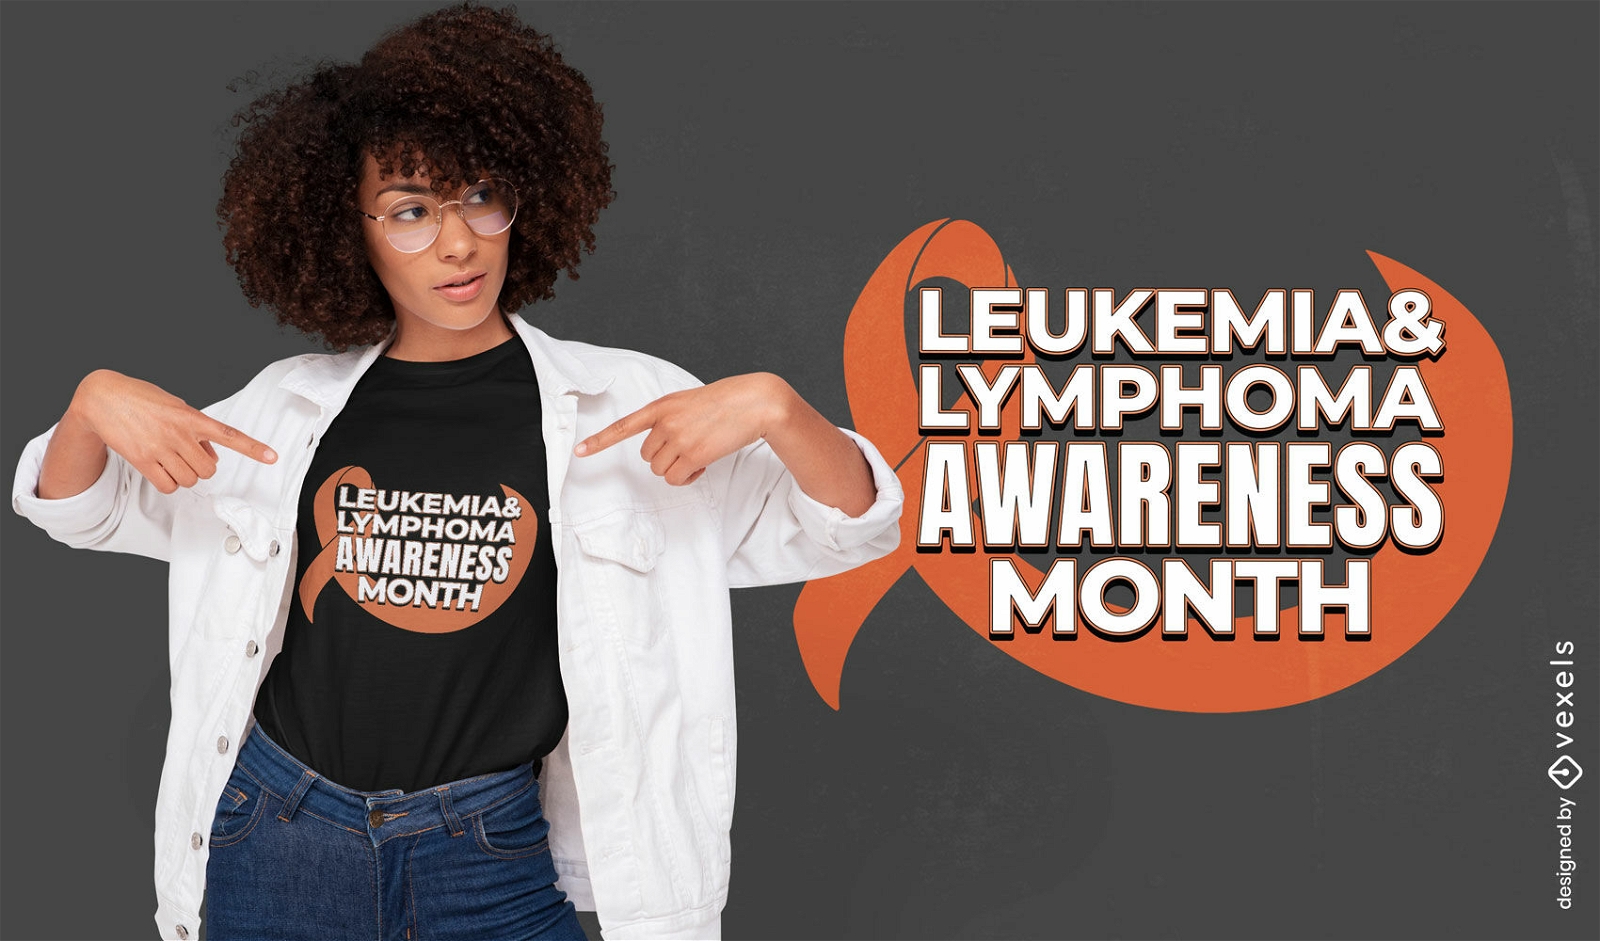 Dise?o de camiseta de concientizaci?n sobre leucemia y linfoma.